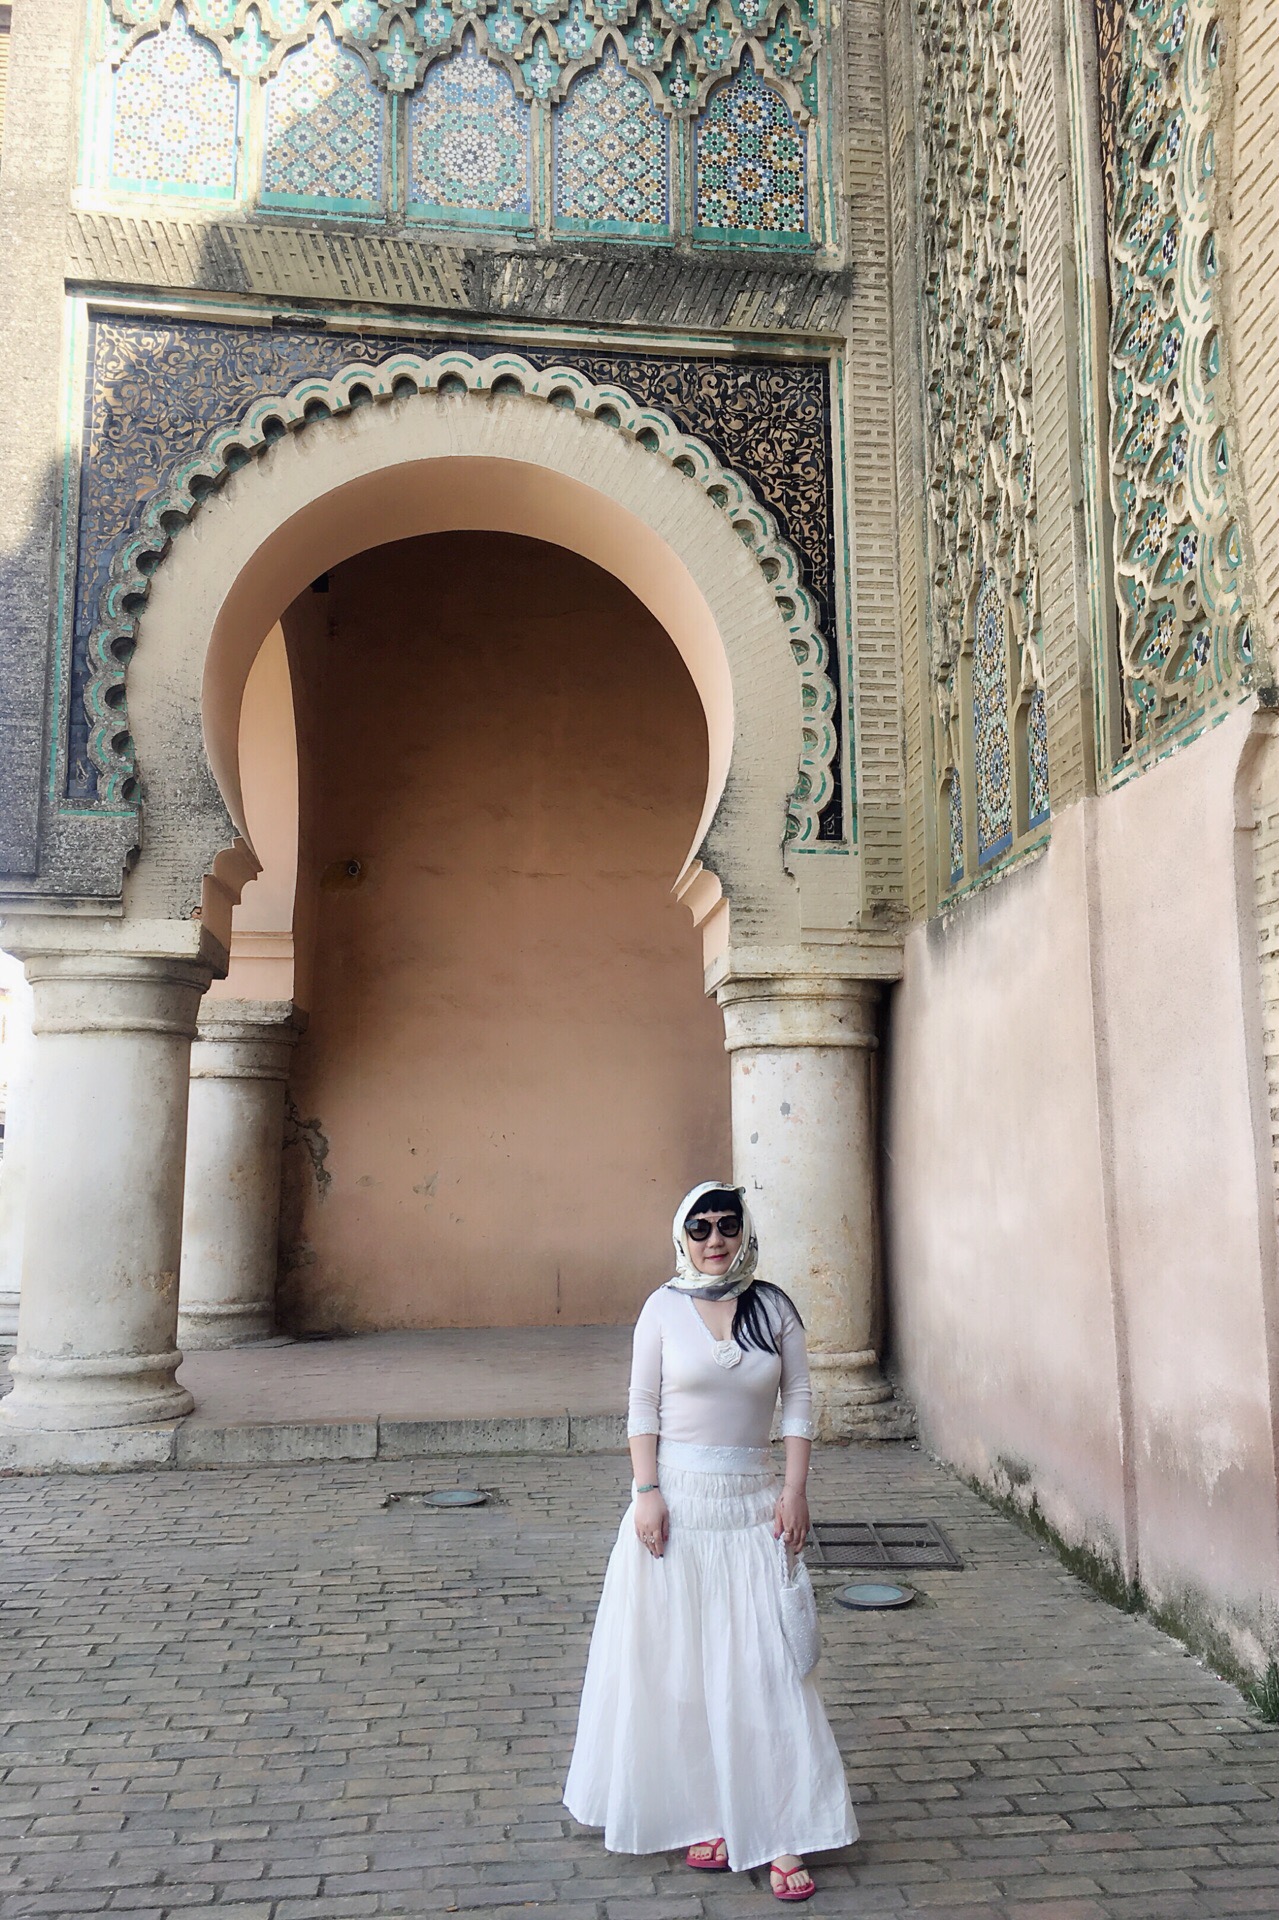 岁月的长廊～摩洛哥凡尔赛”之城的始建于17世纪的皇城梅克内斯～曼苏尔风门